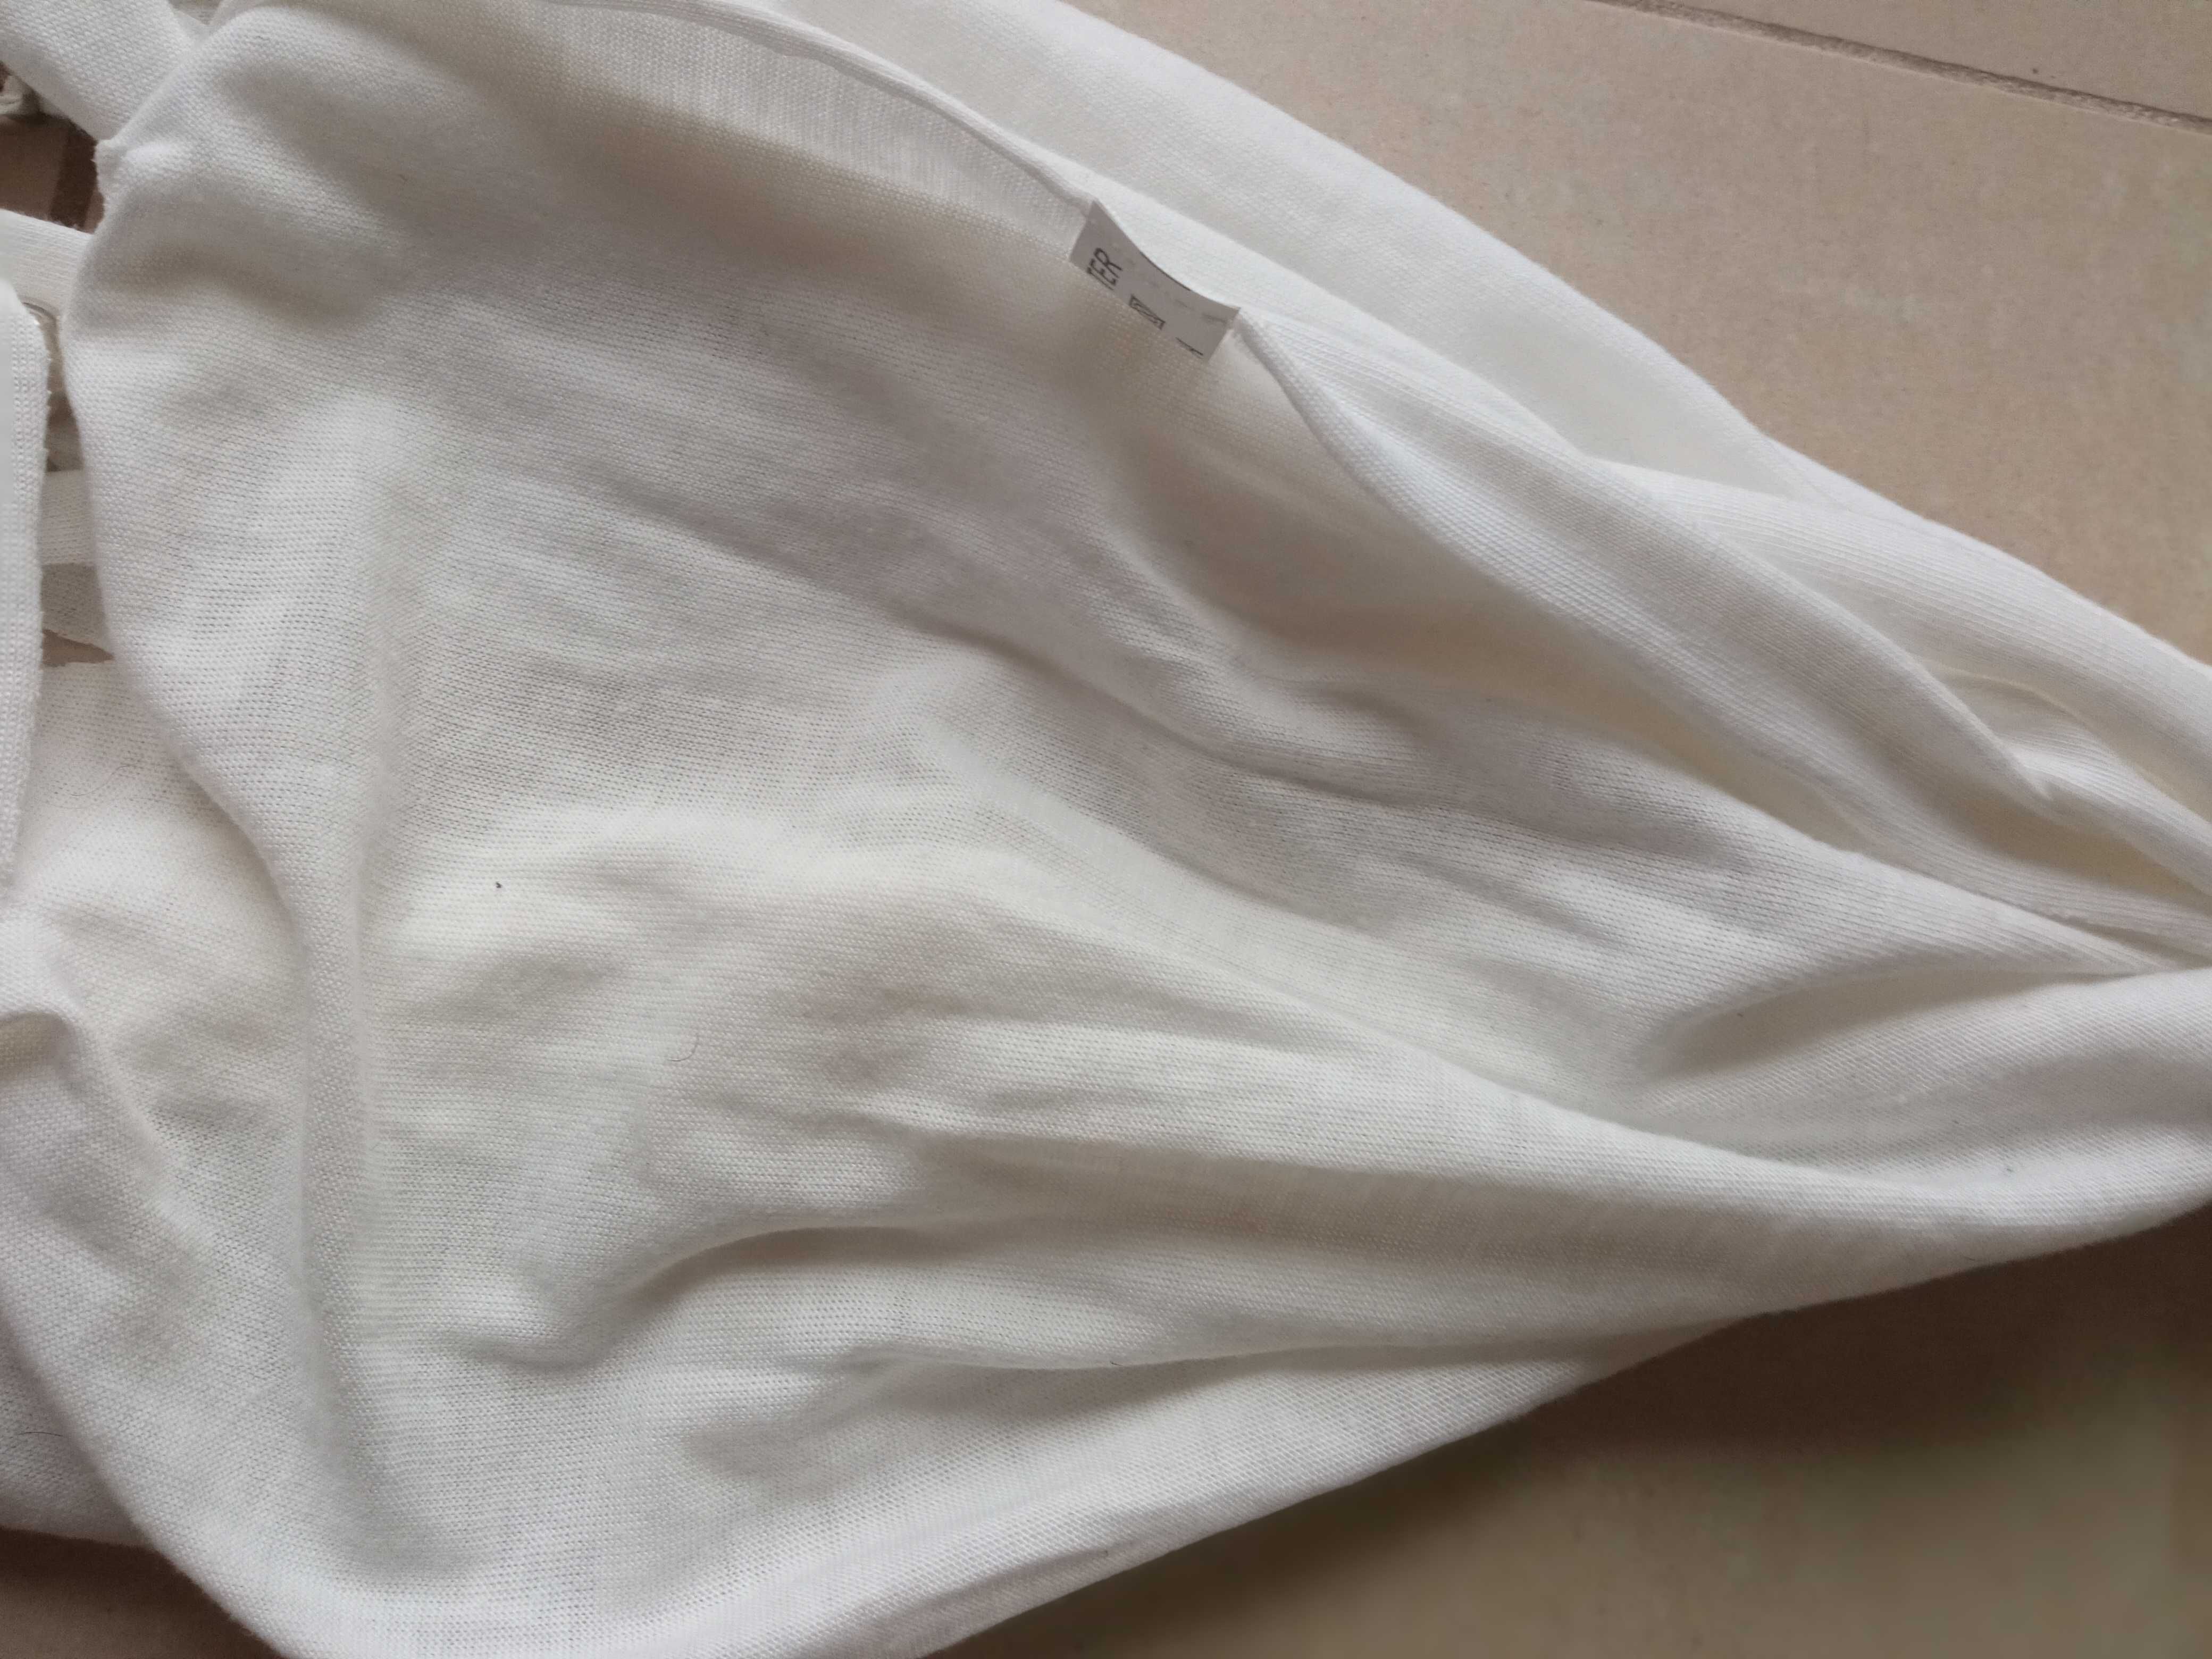 Damski szal biały chusta elegancka z frędzlami kuleczkami